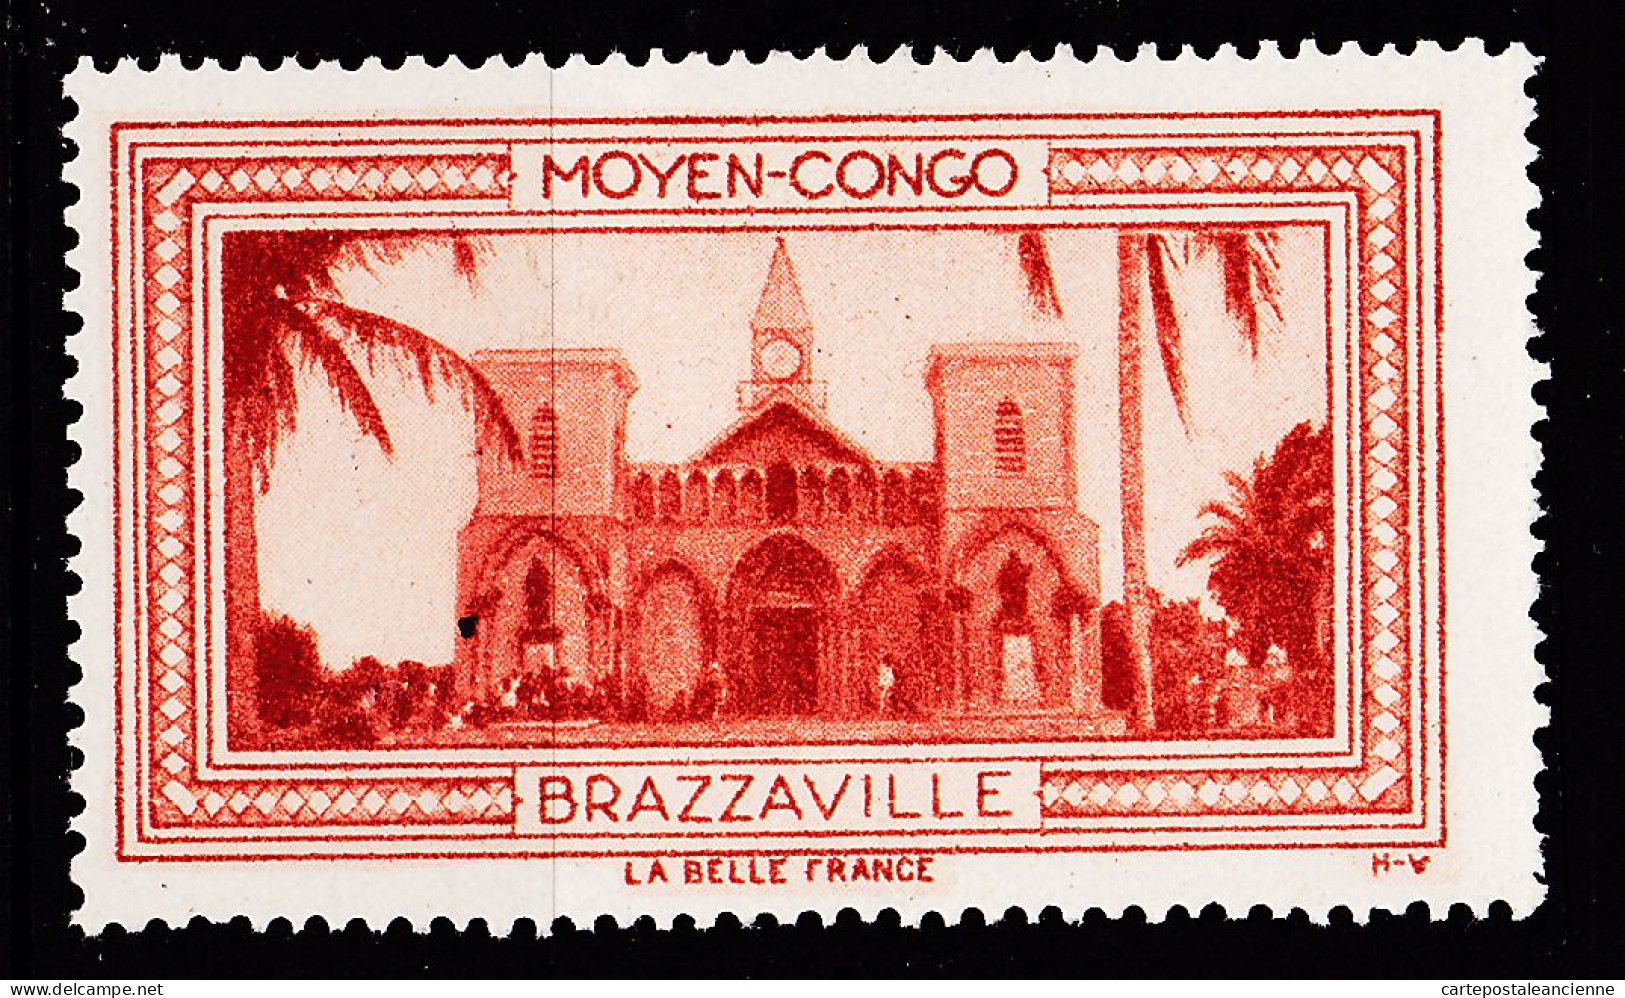 12978 ● BRAZZAVILLE (3) MOYEN-CONGO Vignette De Collection LA BELLE FRANCE 1925s H-V Erinnophilie - Tourism (Labels)